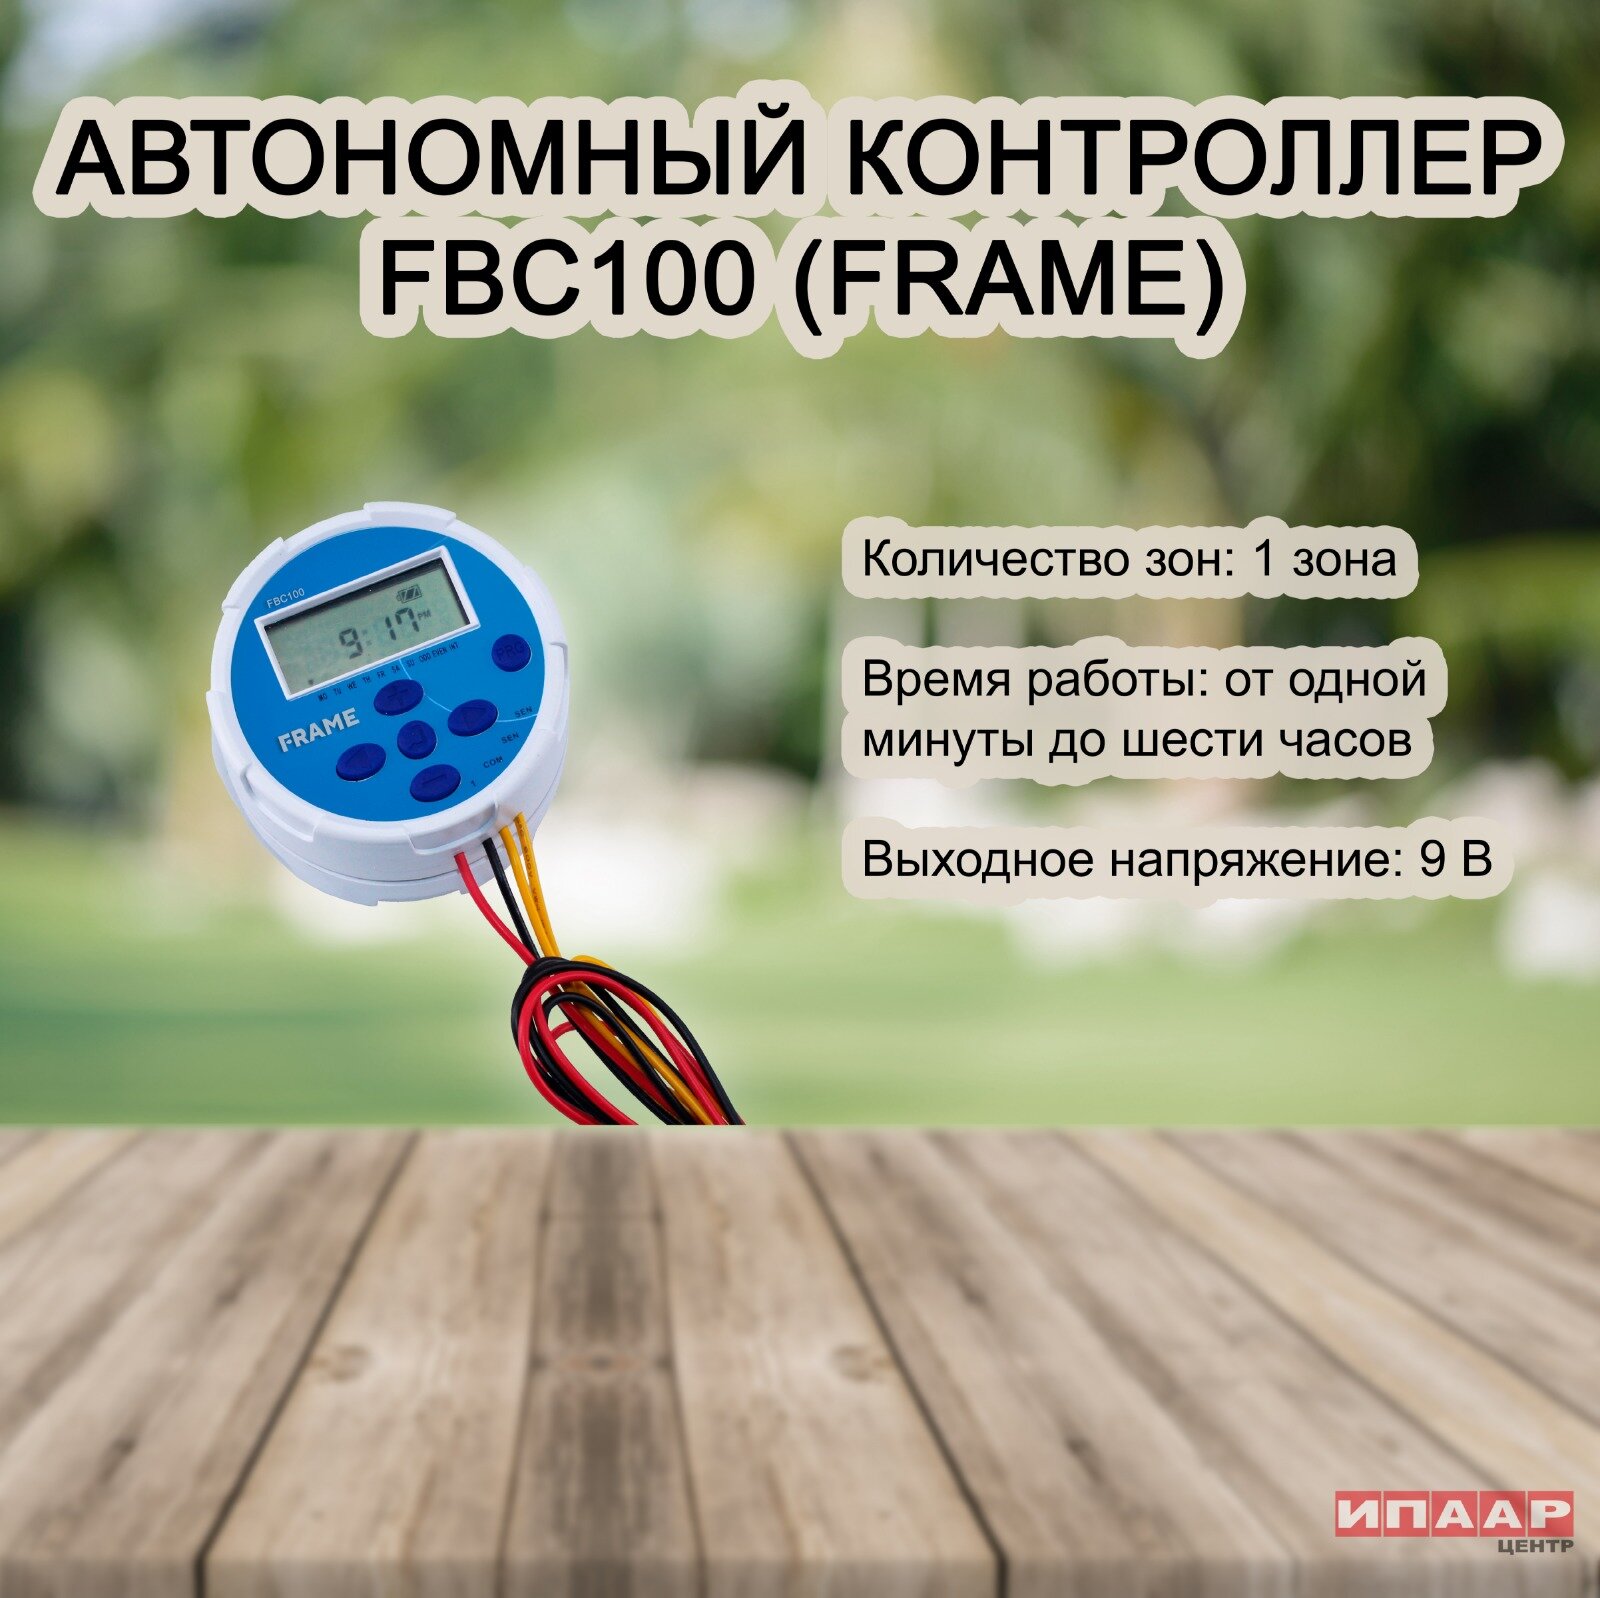 Пульт управления поливом FBC100 (FRAME)